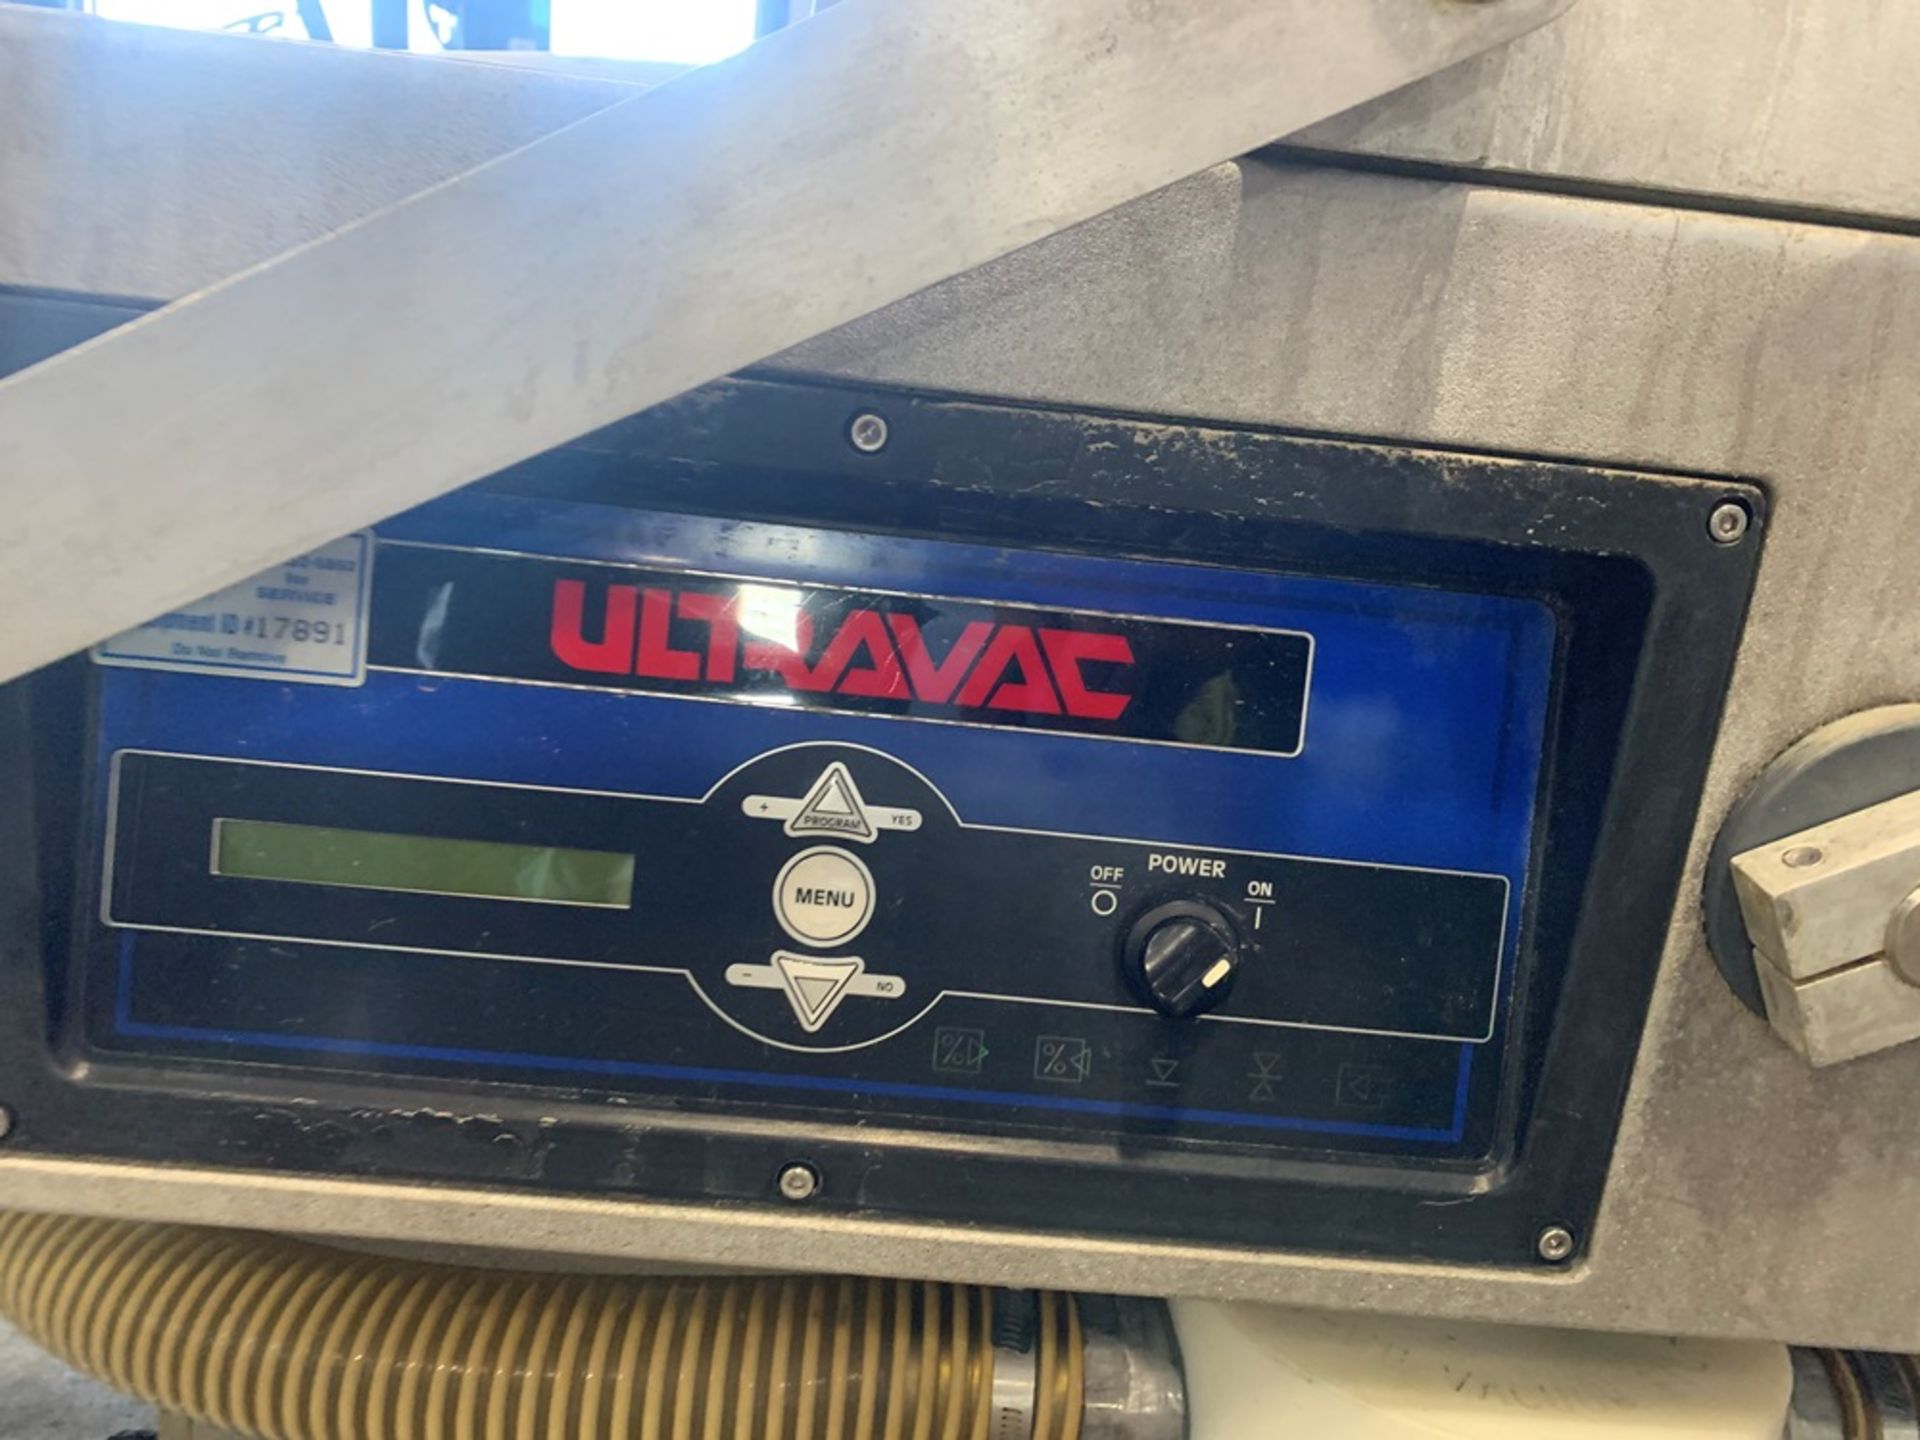 Ultravac Mdl. UV-2100 Double Chamber Vacuum Packager, 12" deep chamber, Ser. #903001, 240 volts, 3 - Bild 4 aus 10